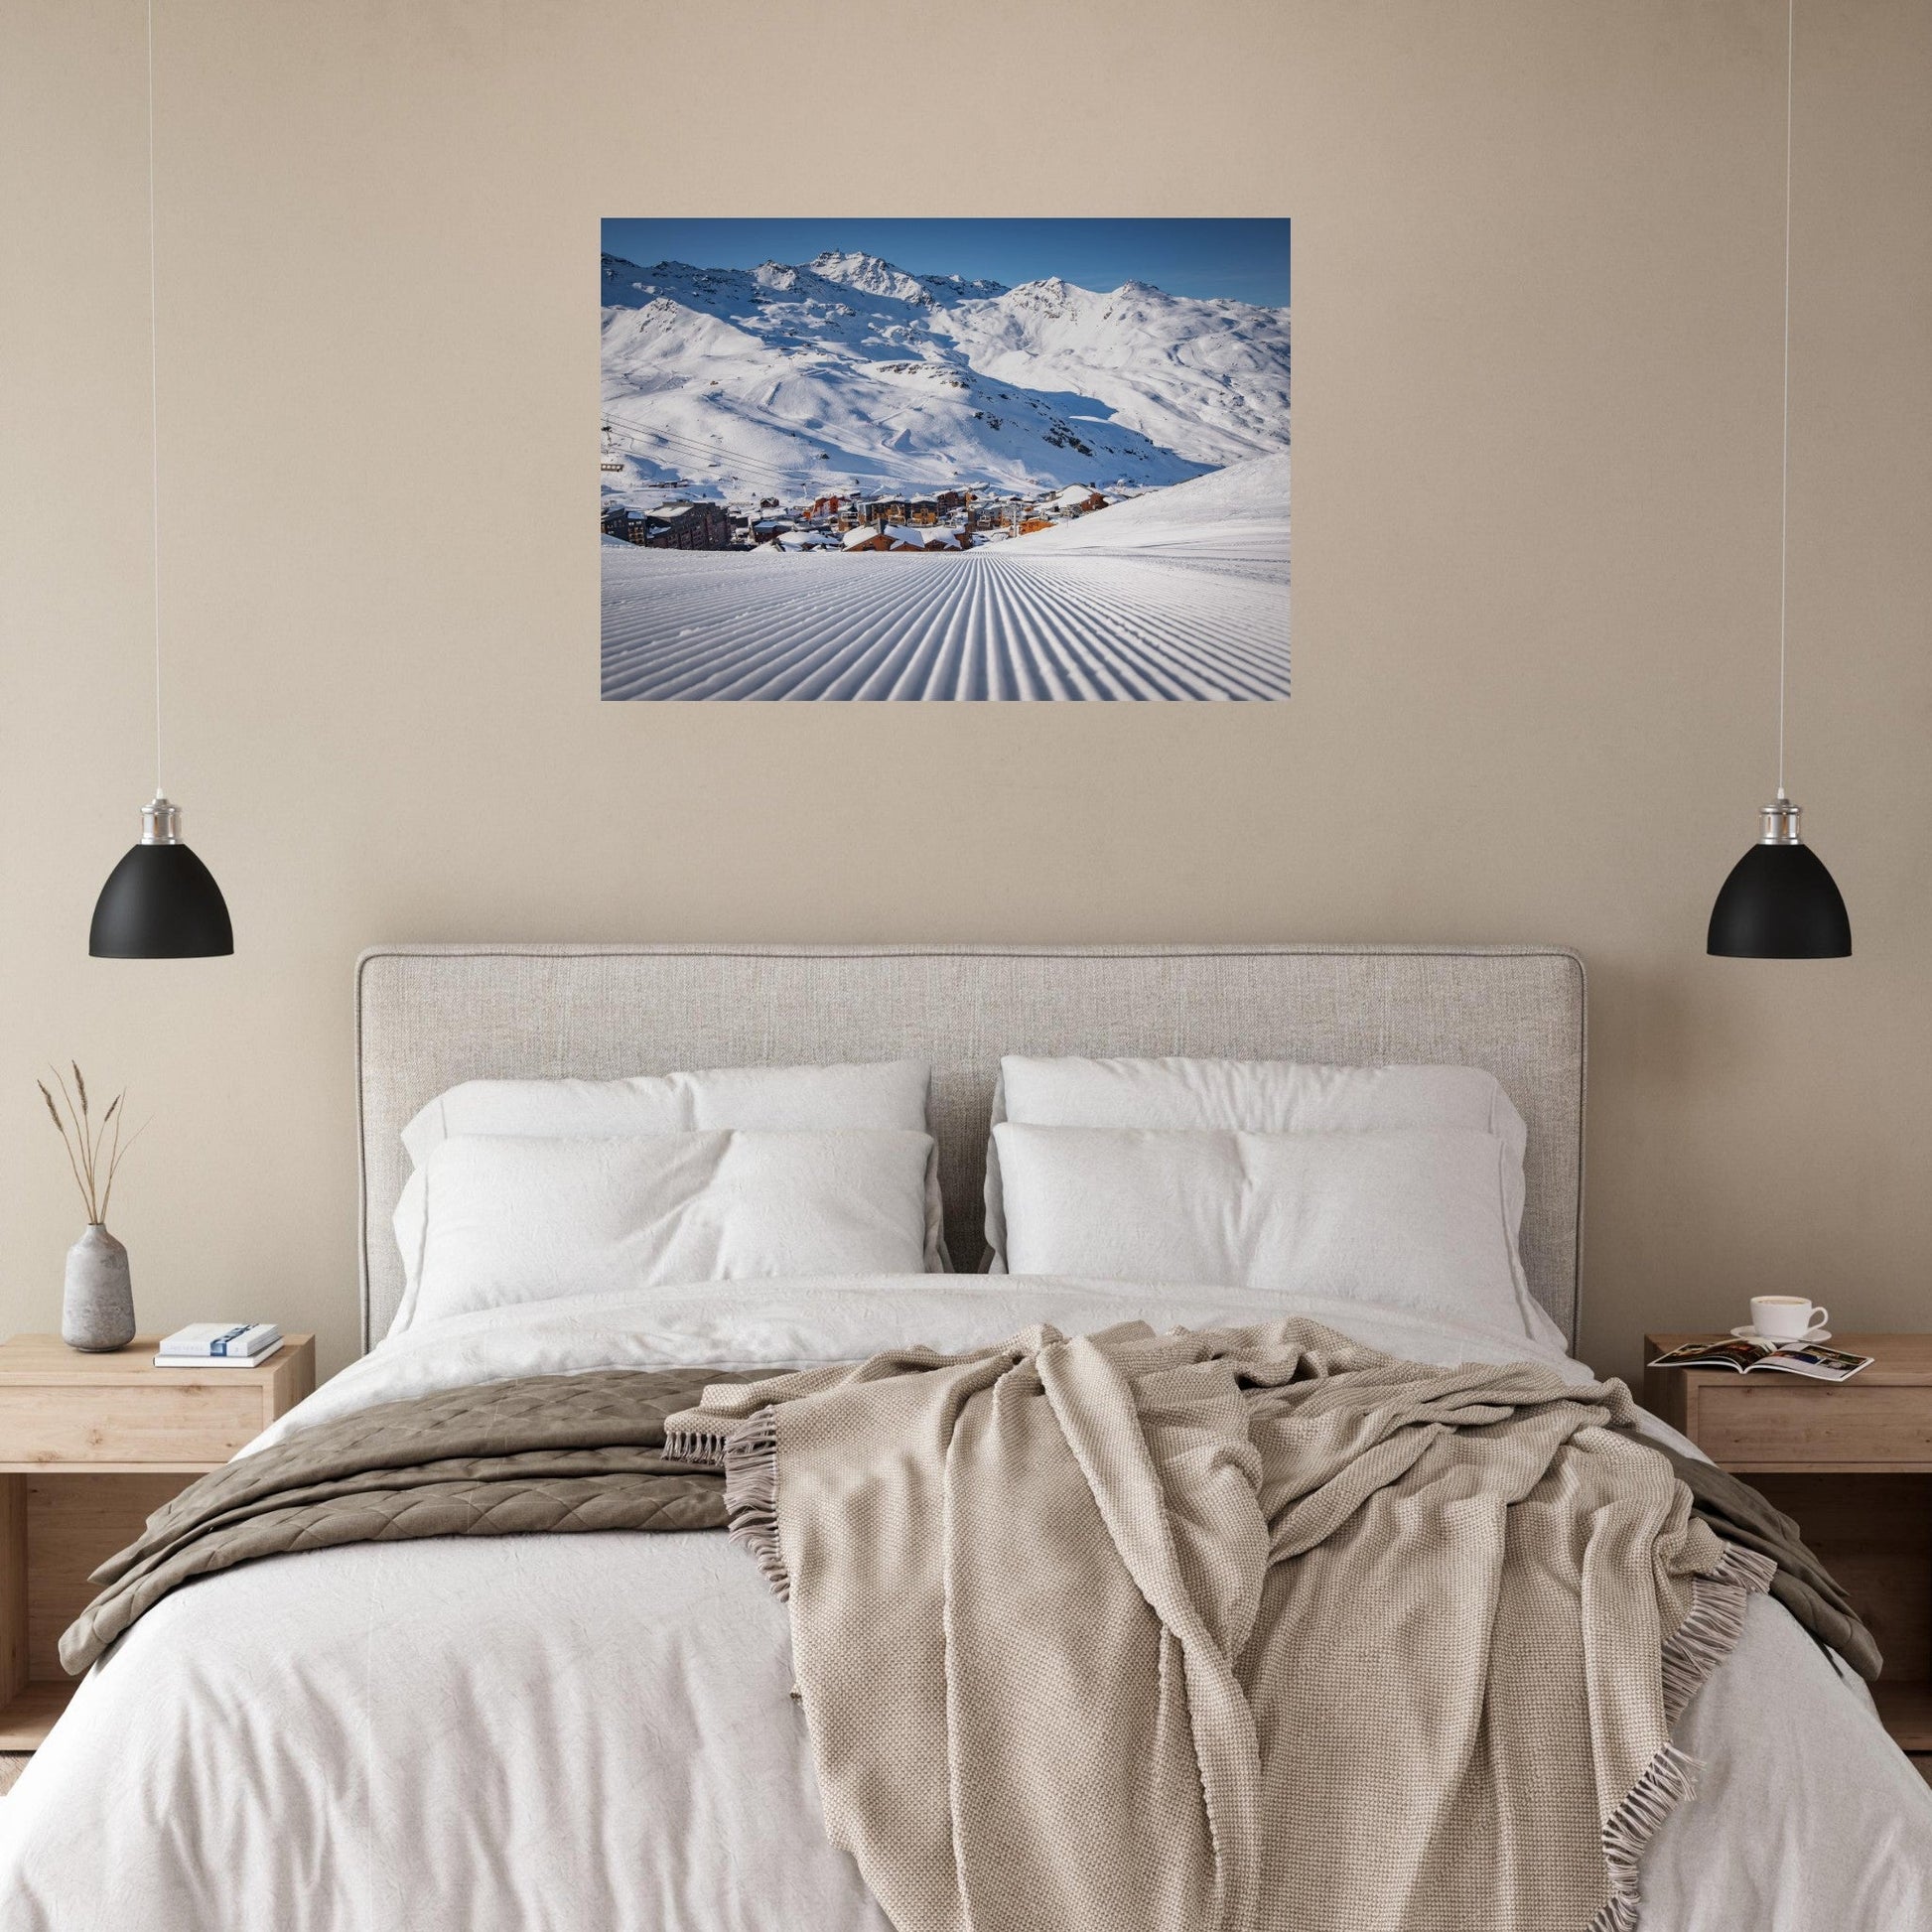 Vente Photo de Val Thorens sous la neige - Tableau photo alu montagne